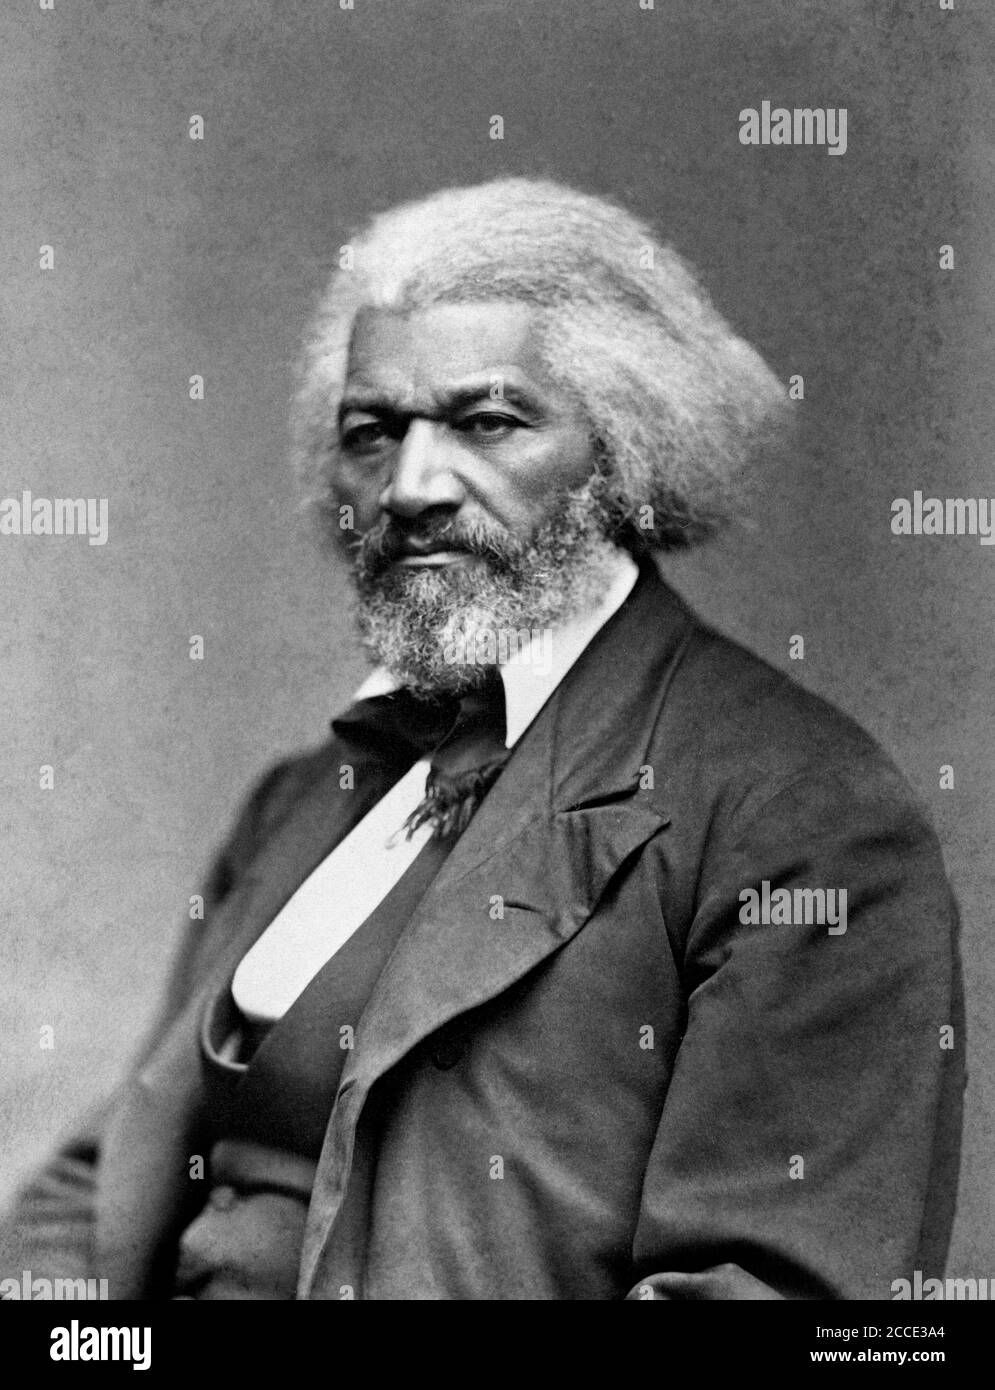 Ritratto di Frederick Douglass (1818-1895), circa 1879. Douglass, un ex schiavo, era un riformatore sociale americano, abolizionista, oratore, scrittore e statista Foto Stock